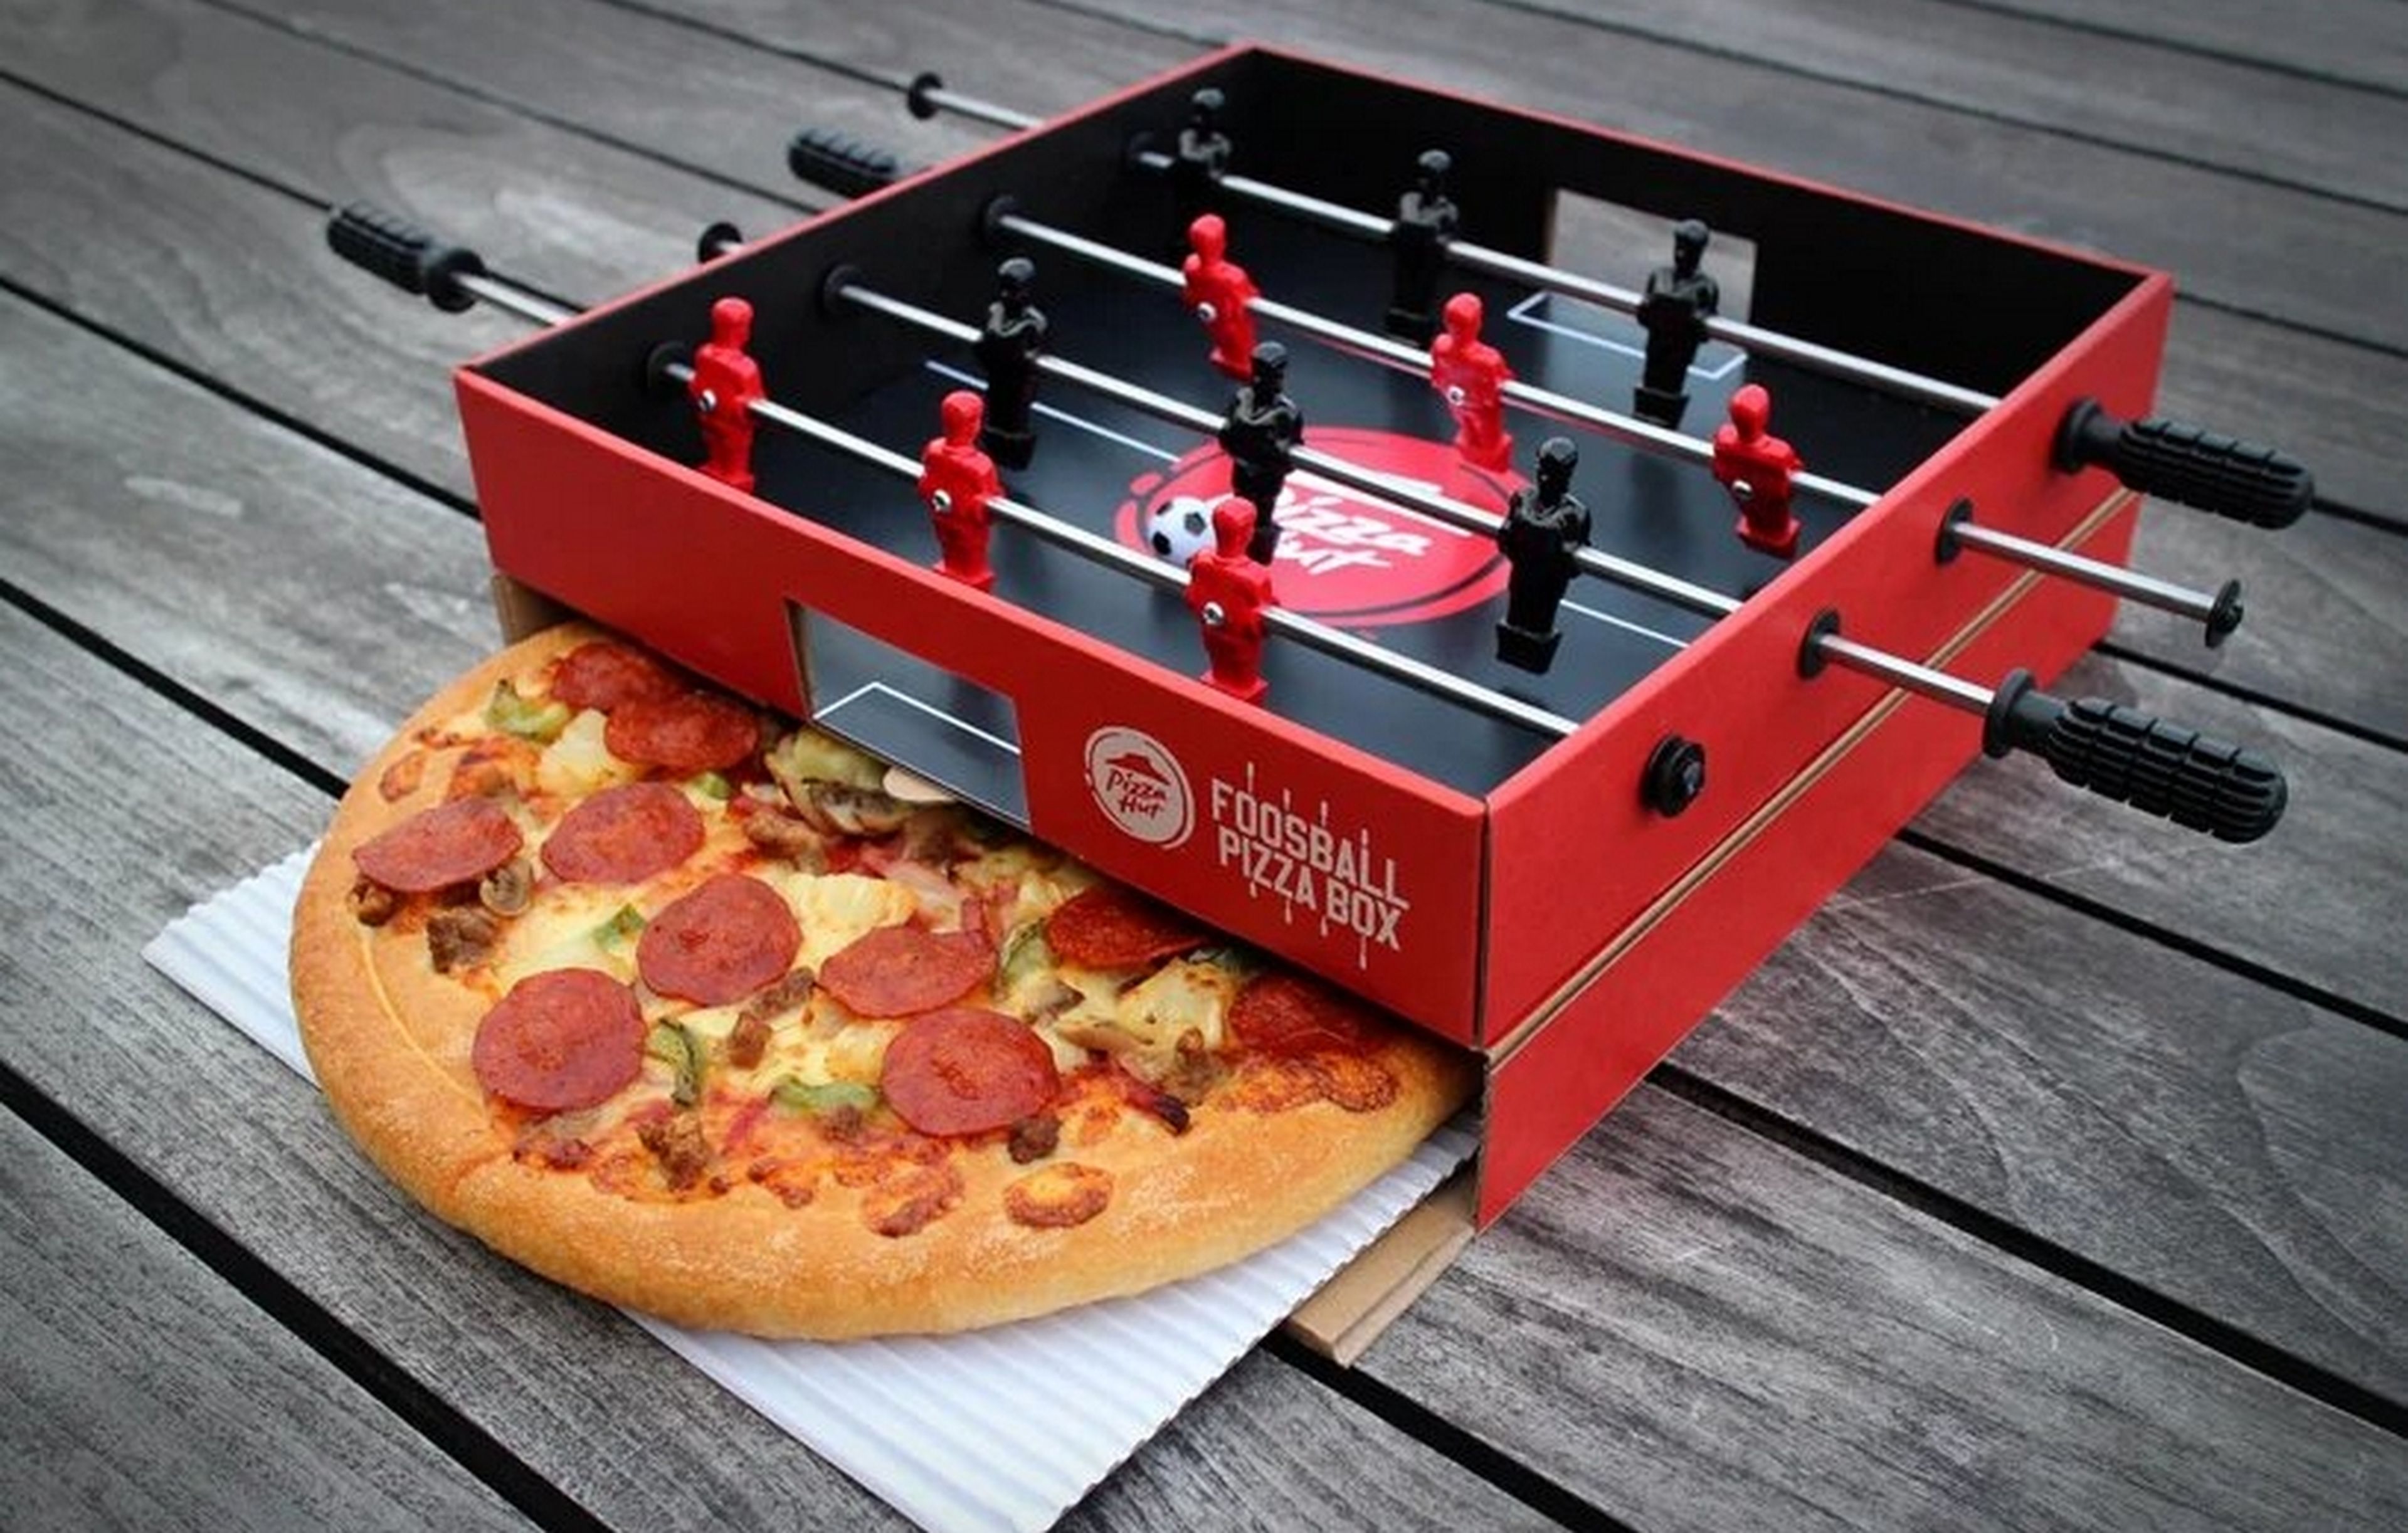 Las nuevas cajas de Pizza Hut que entusiasman a los más futboleros